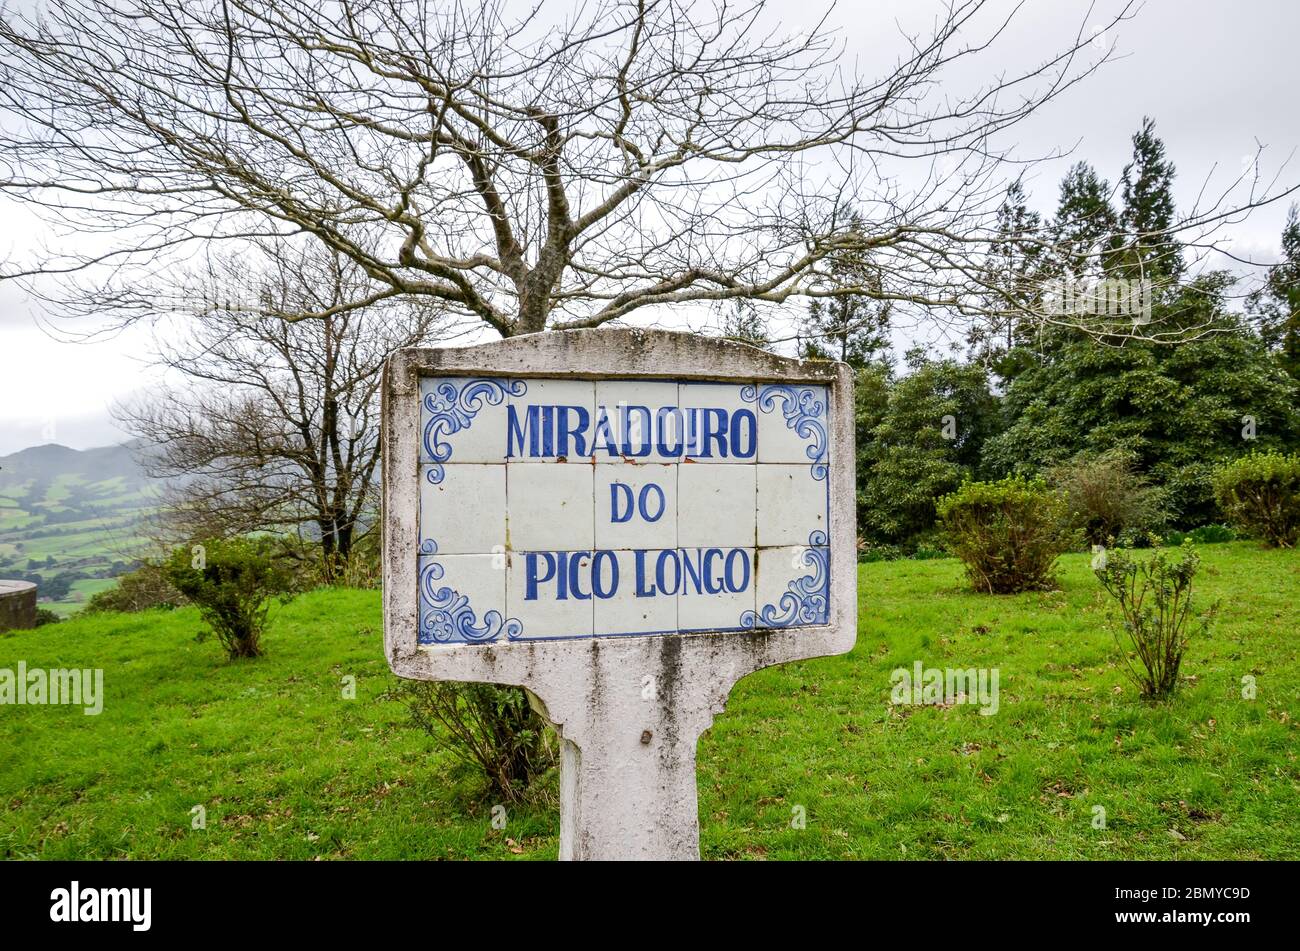 Signe bleu Miradoiro do Pico Longo, point de vue Pico Longo en anglais, sur des tuiles typiquement portugaises. Herbe et arbres sans feuilles en arrière-plan. Photo horizontale. Banque D'Images